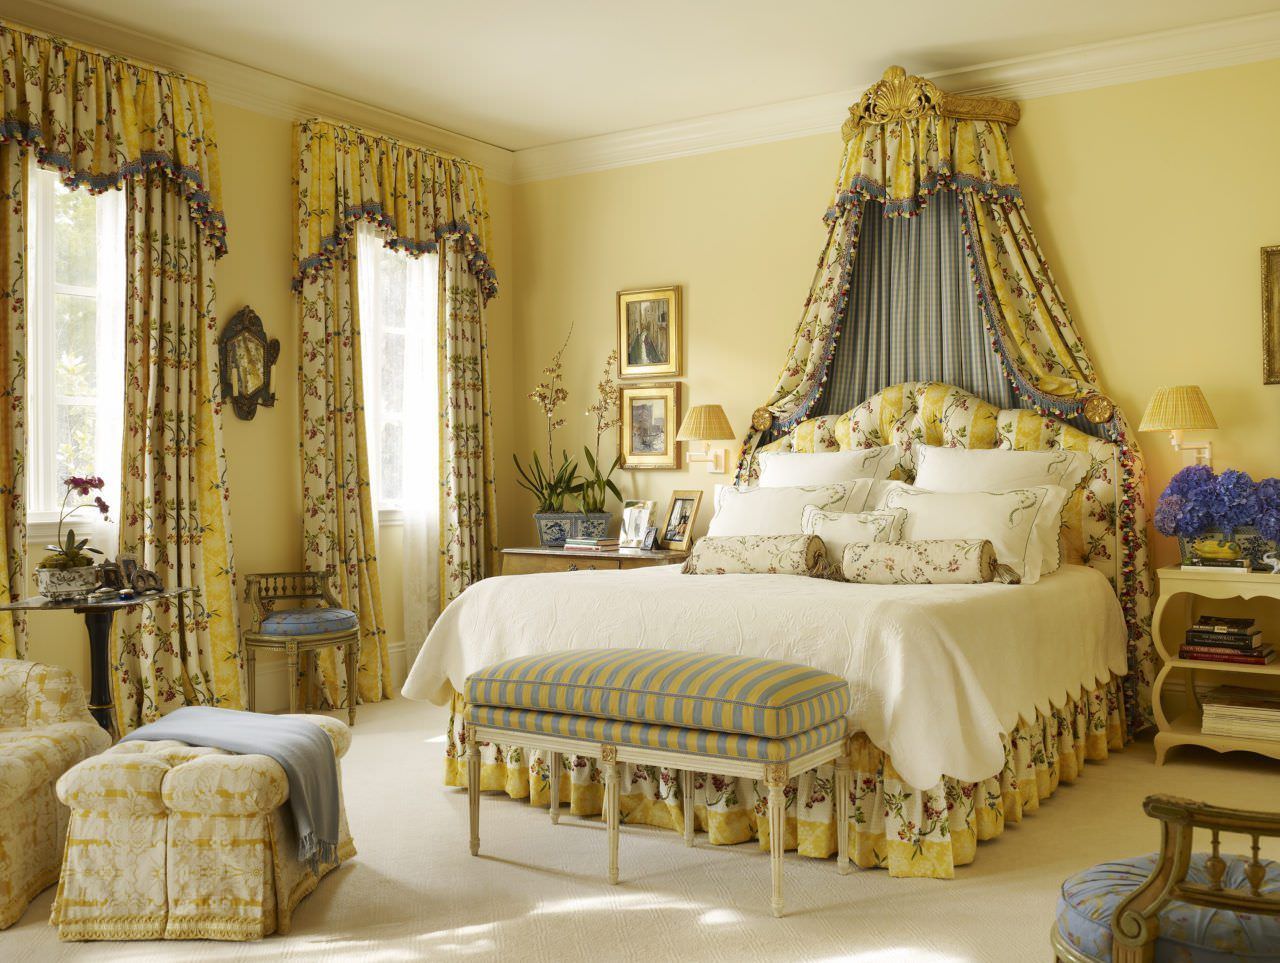 Rèm vải với họa tiết đặc sắc, nổi bật tô điểm cho phòng ngủ theo phong cách cổ điển